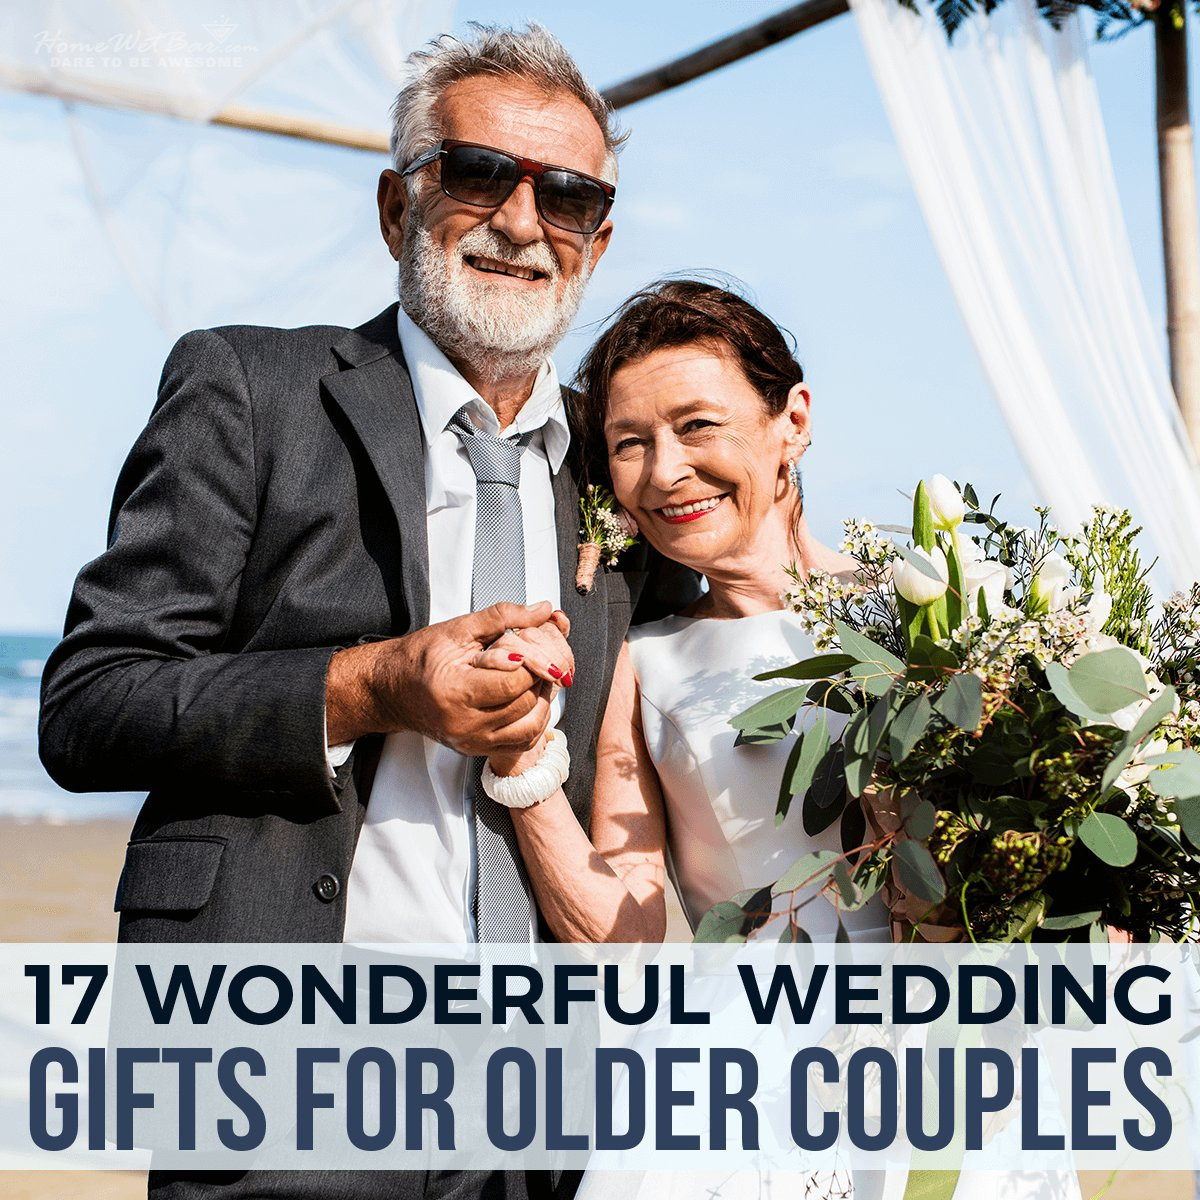 Gift Ideas For Older Couples
 20 Best Gift Ideas for Elderly Couple – Home Family